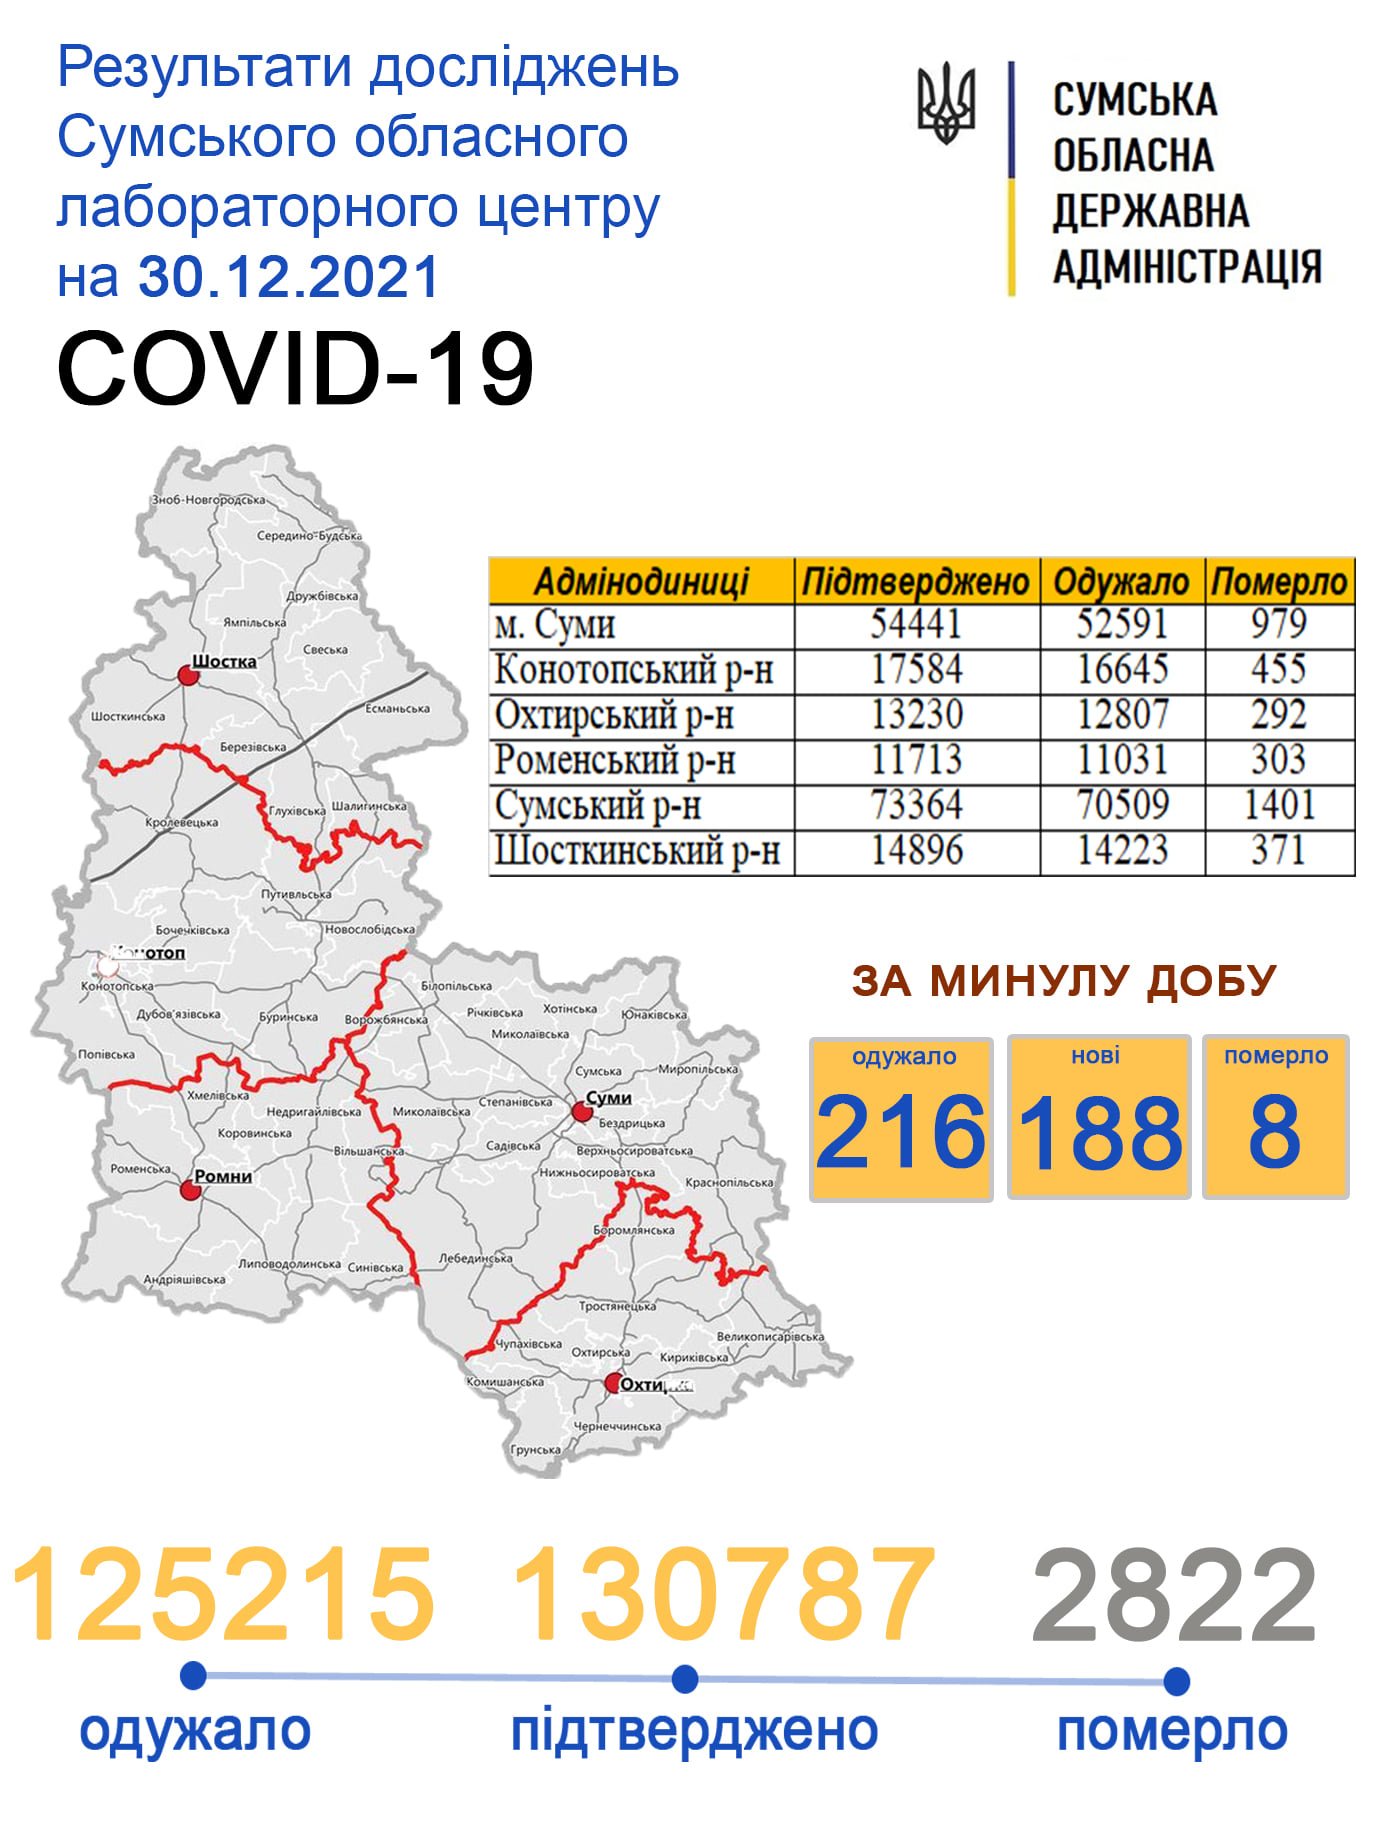   Covid-19   188  